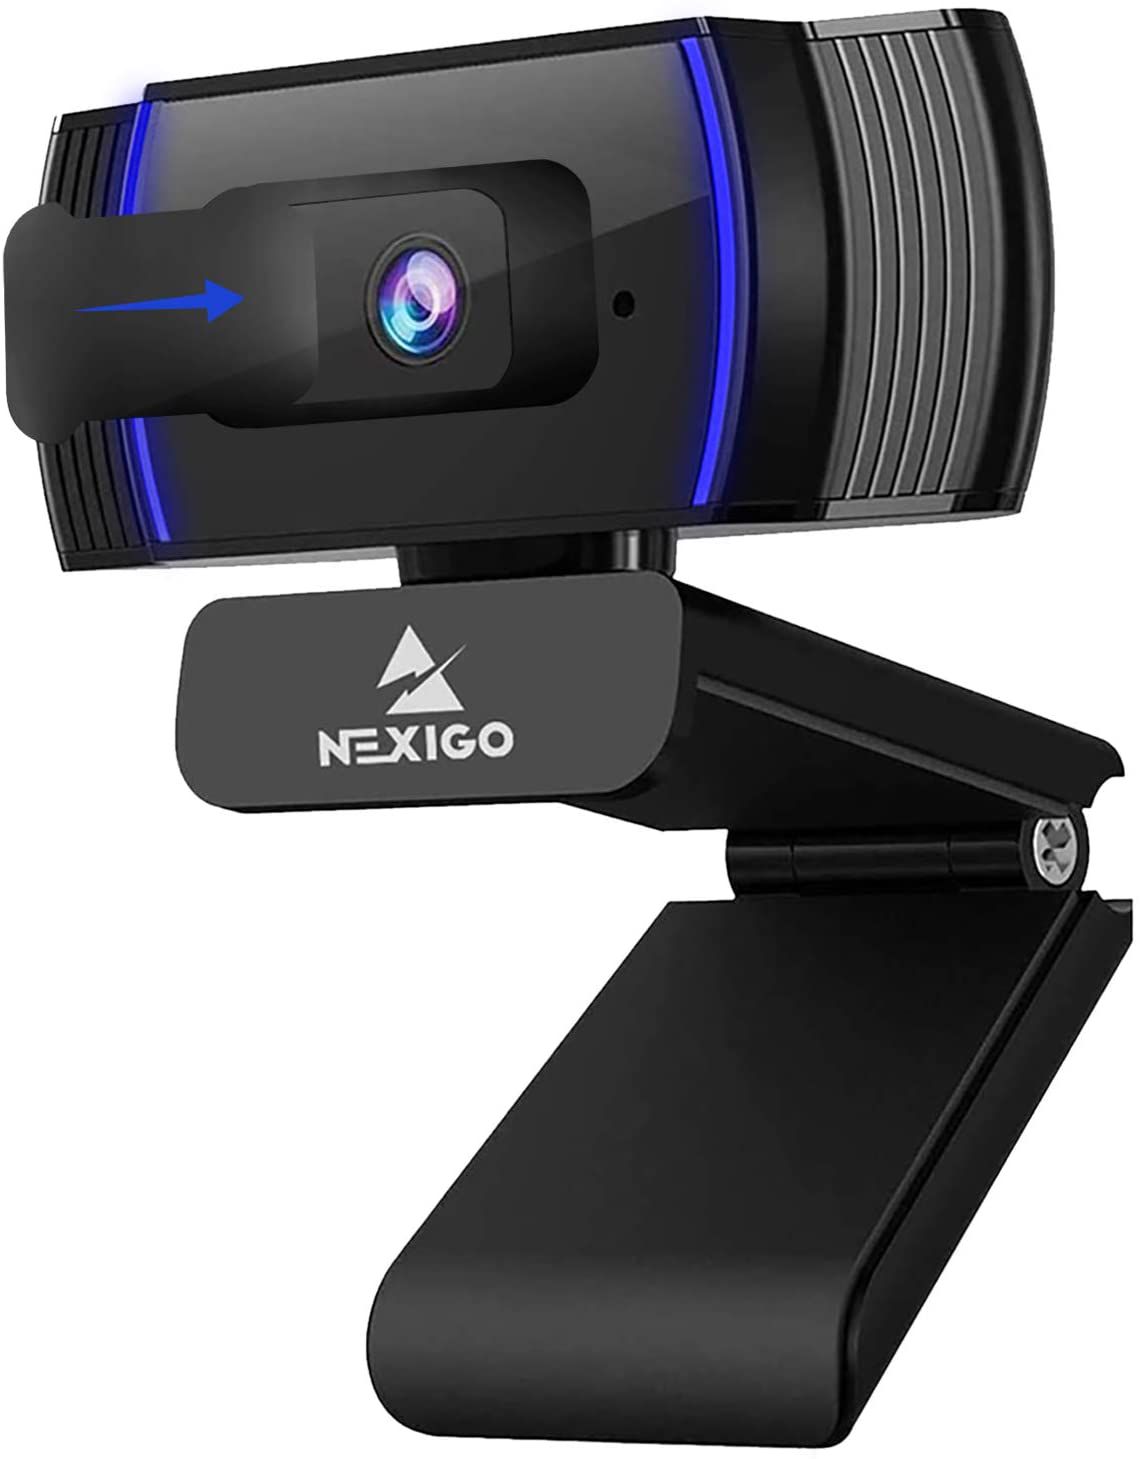 The NexiGo N930AF